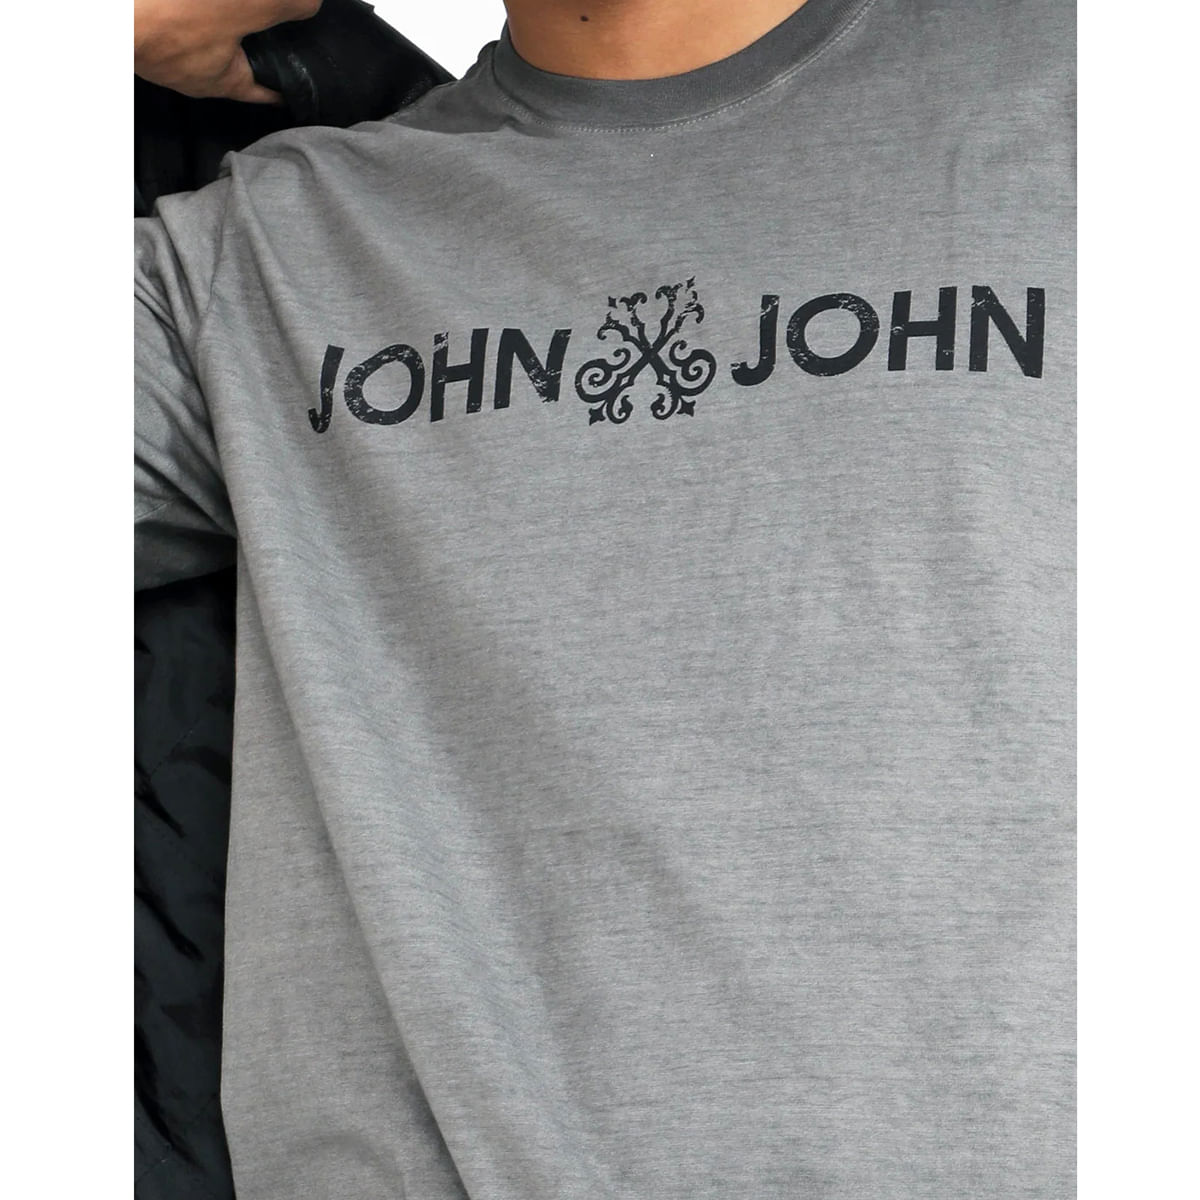 Camiseta John John Rg New Dirty III Masculina - Preto